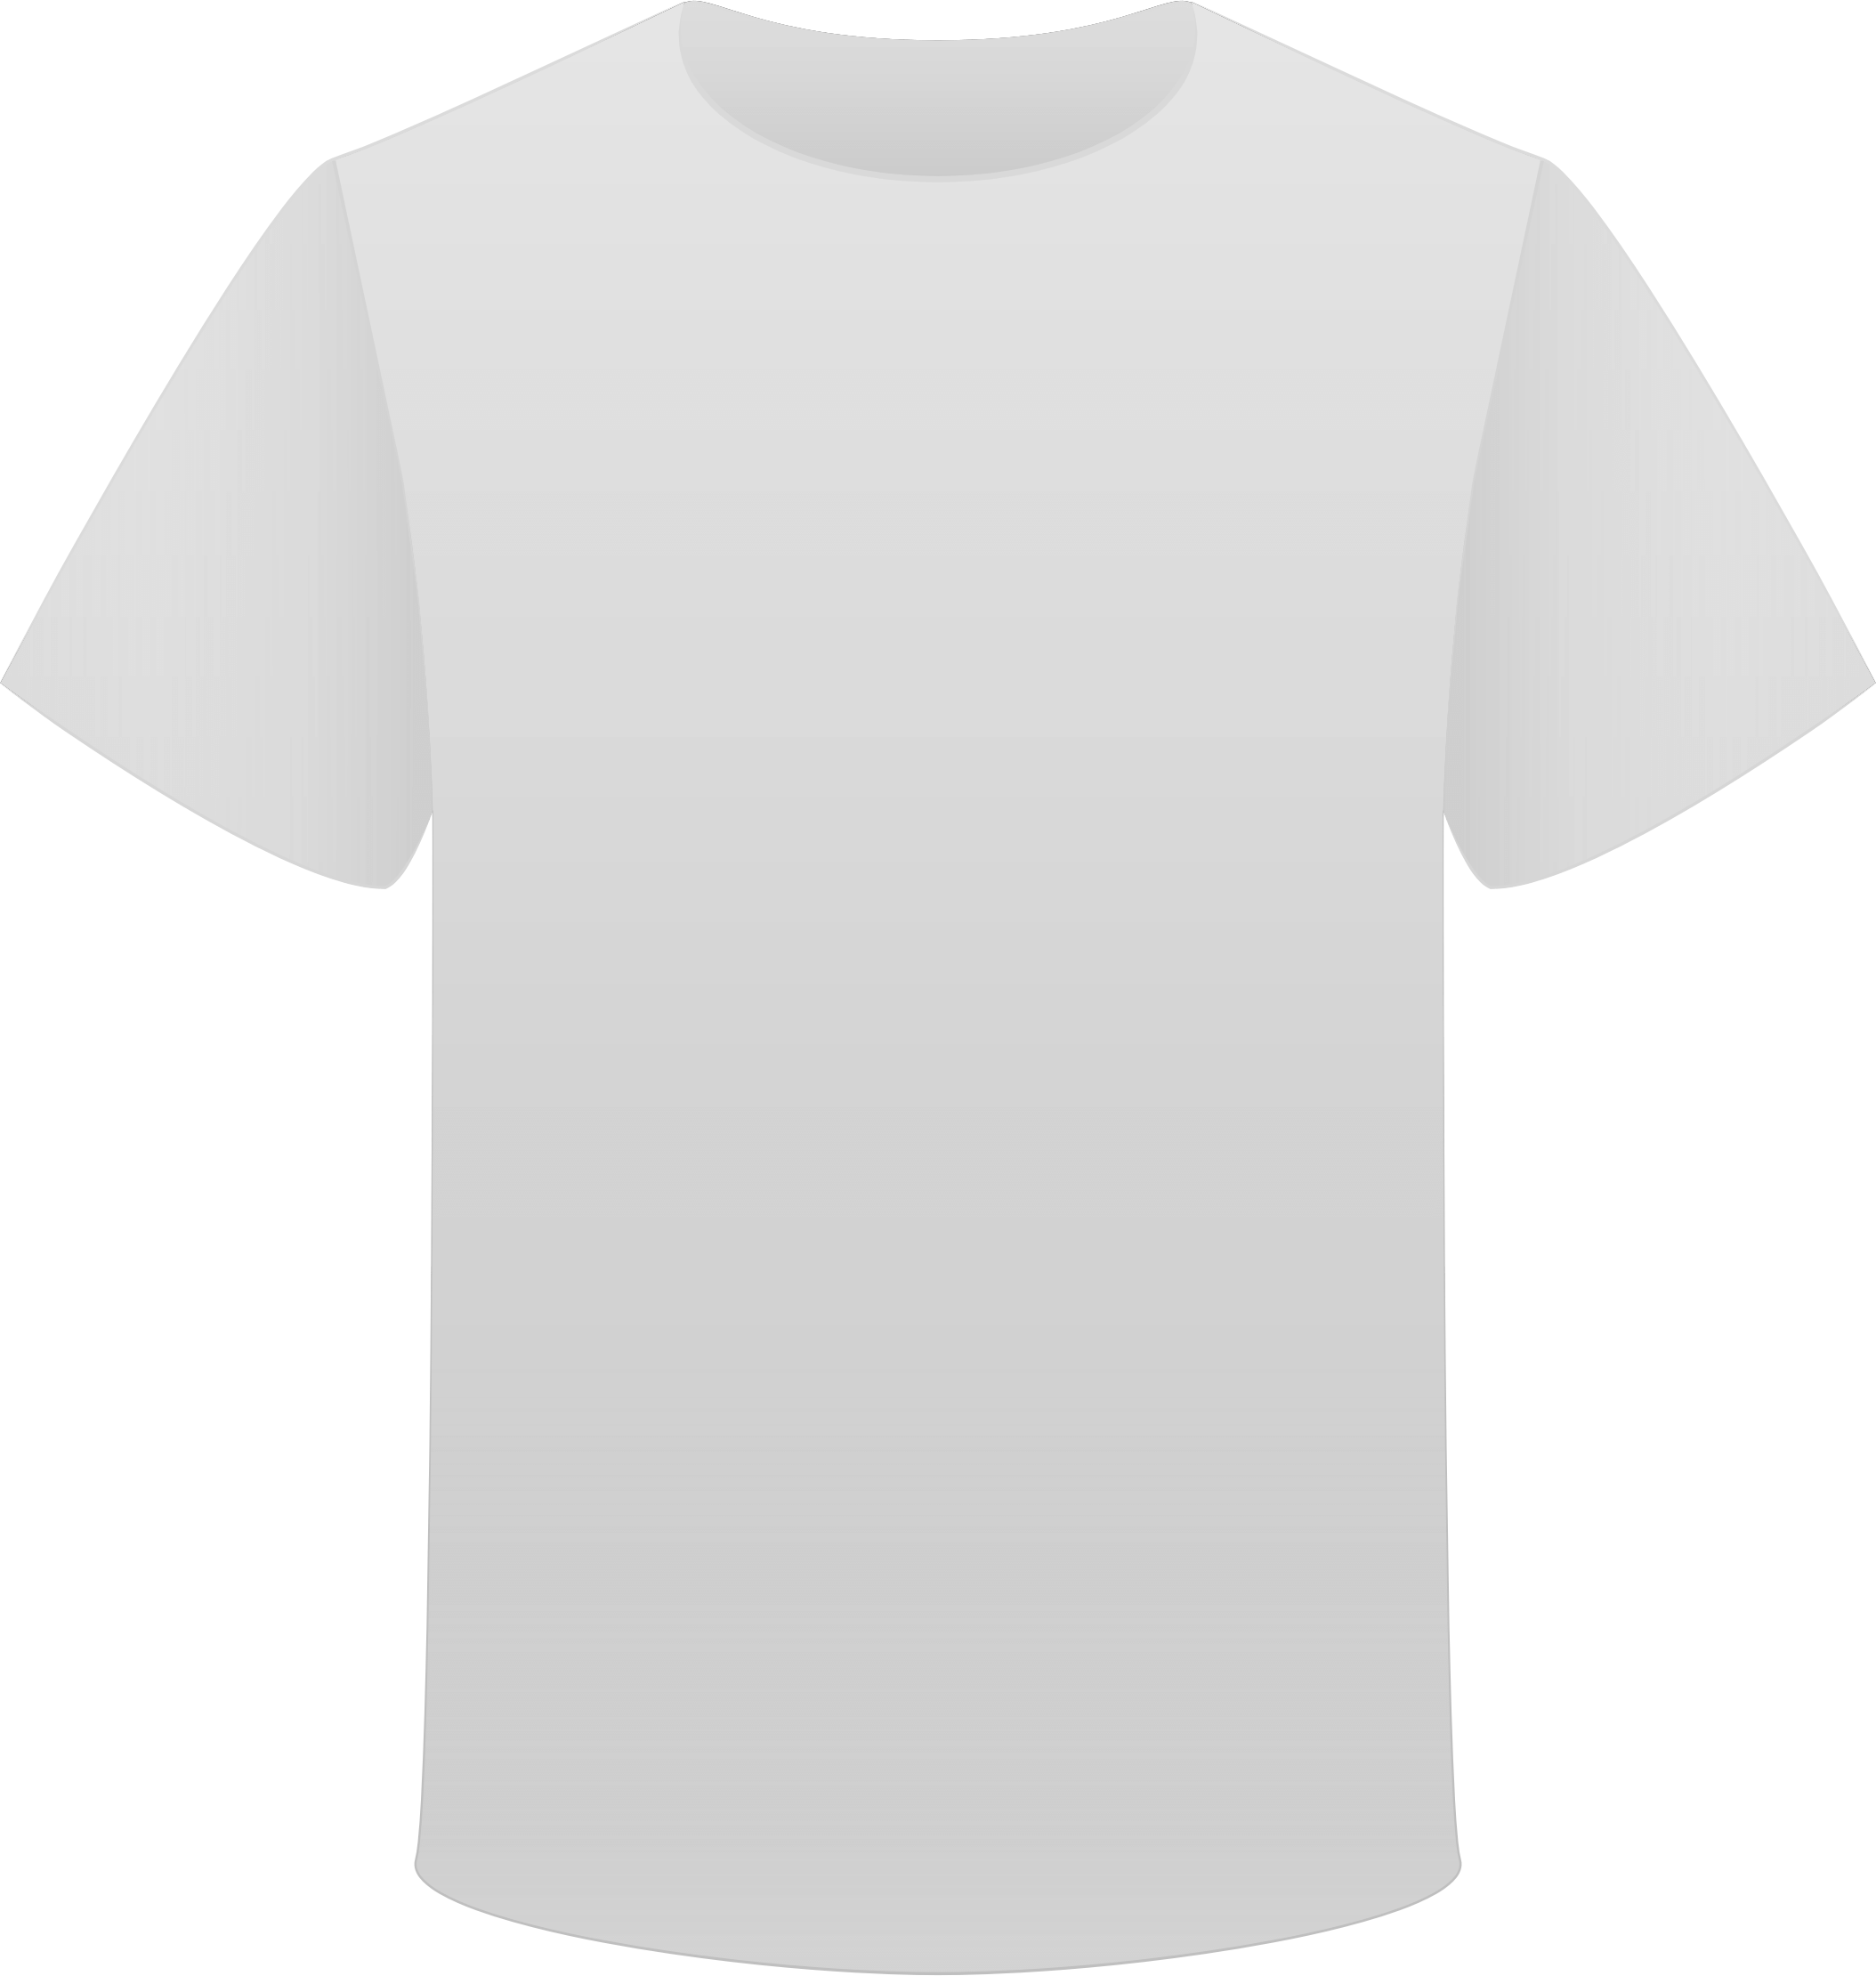 clipart white t shirt - photo #29